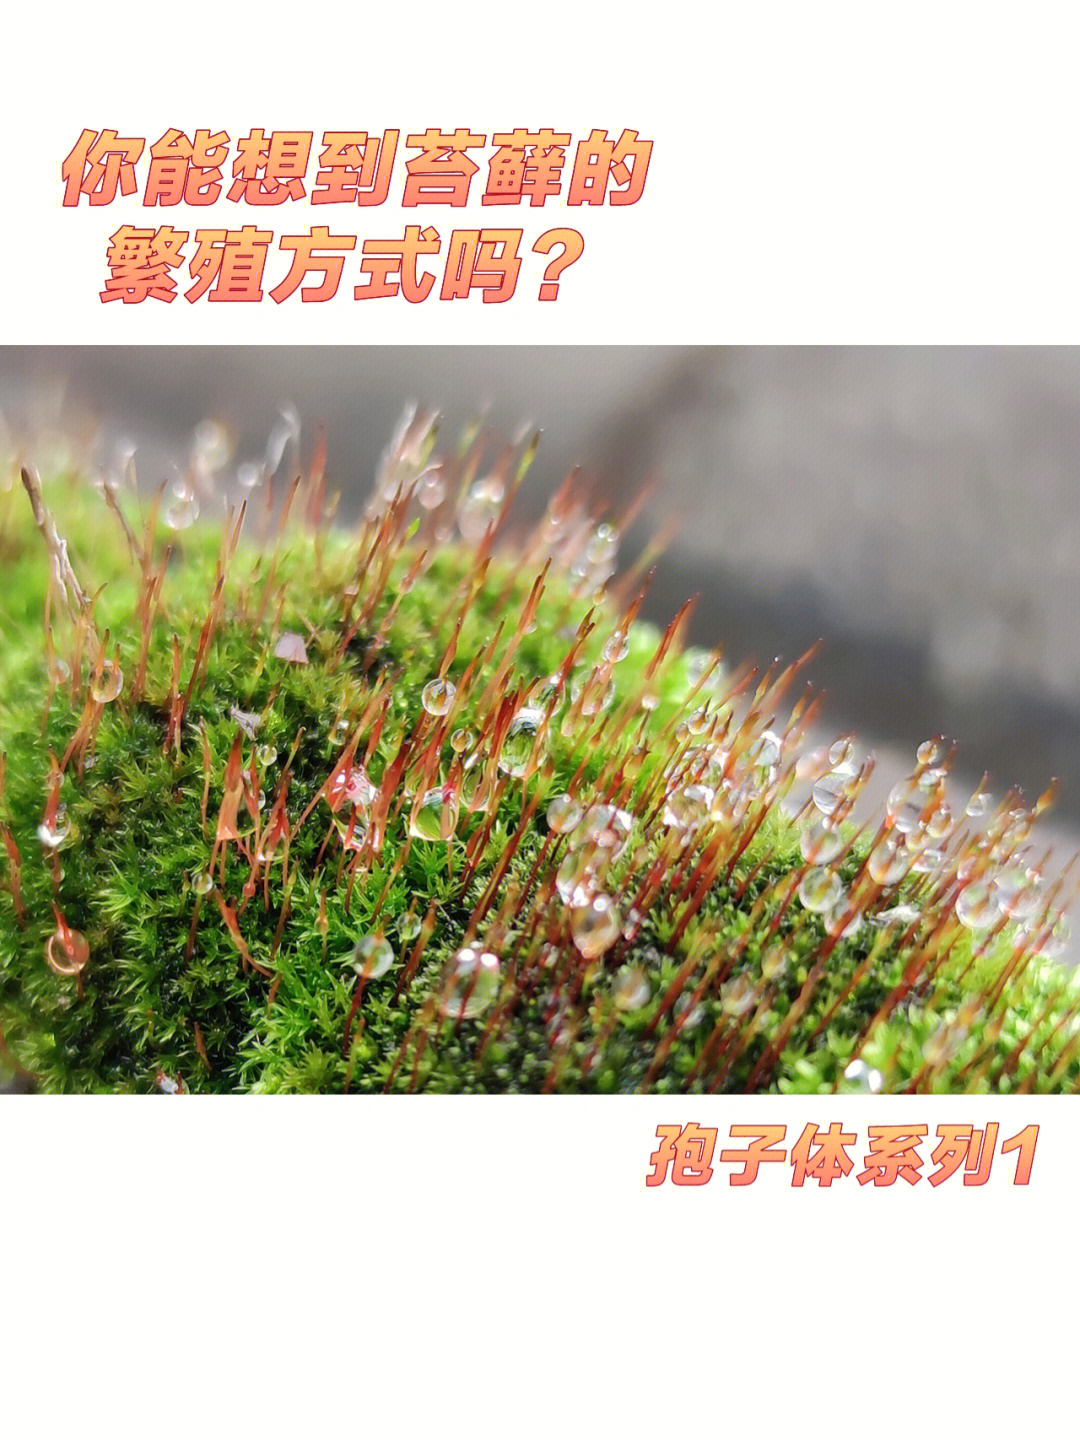 苔藓生殖方式图片